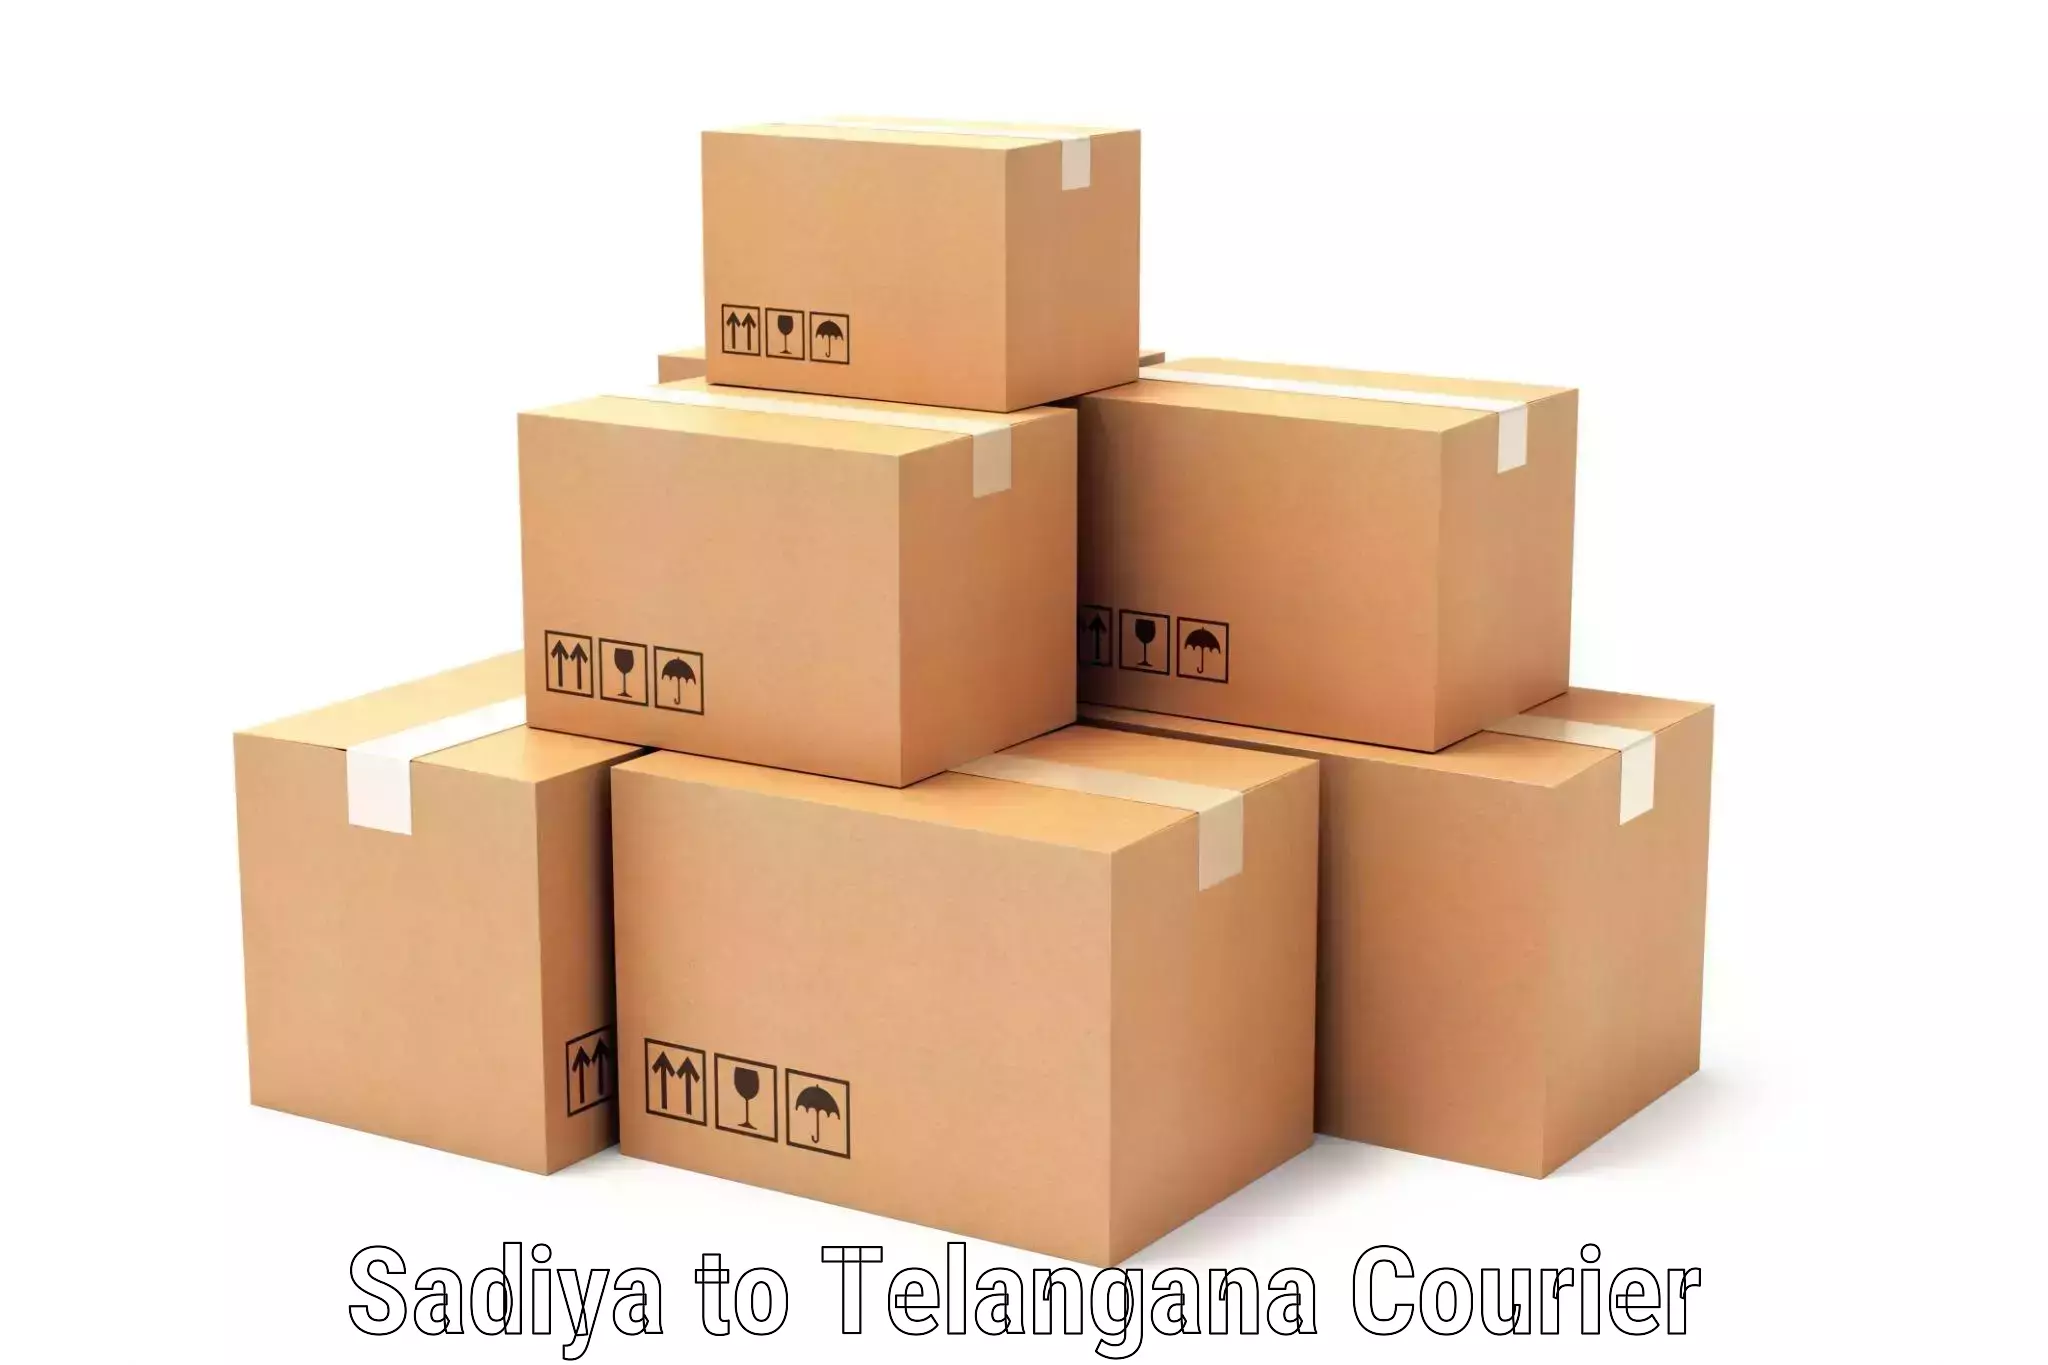 Sustainable shipping practices Sadiya to Telangana